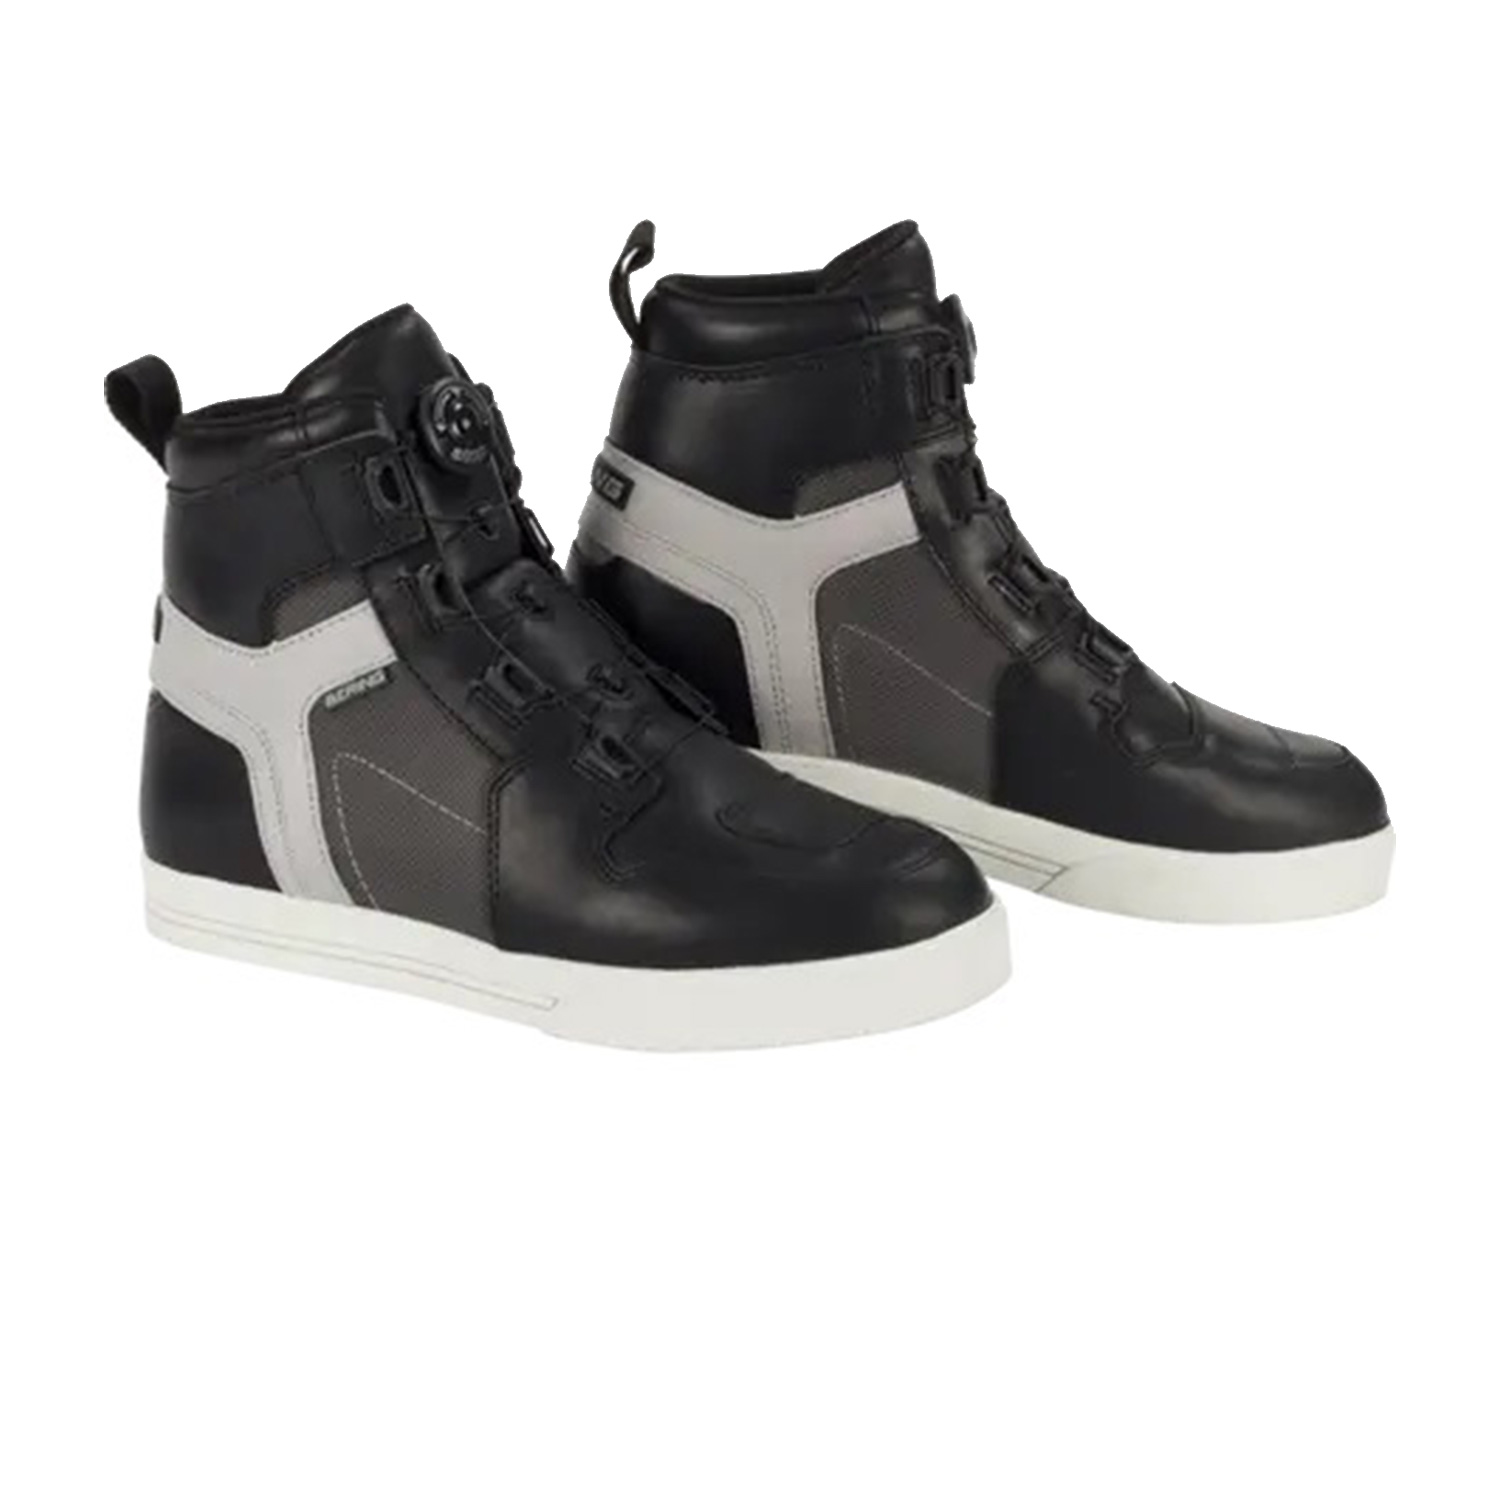 Bering Sneakers Reflex Vented Black Grey 40